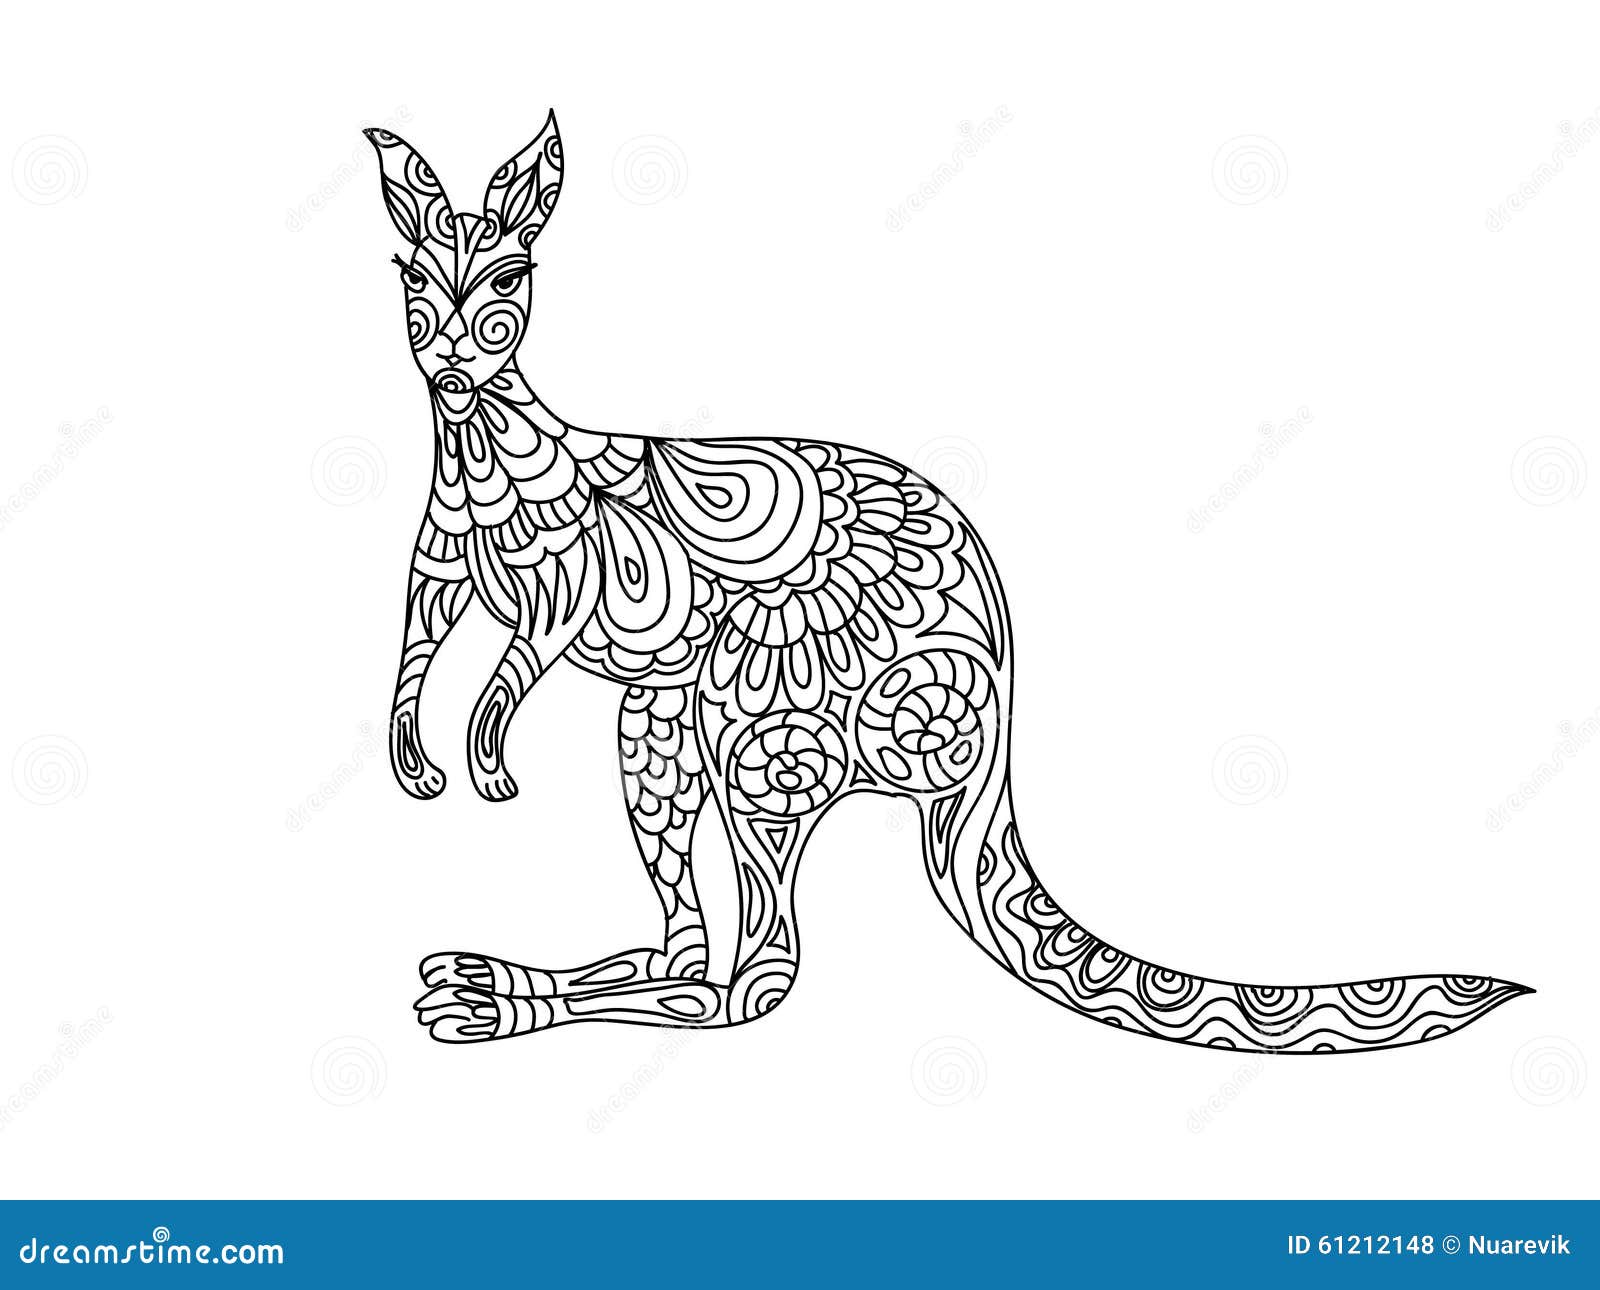 Download Kangaroo Mandala Stock Illustrations 16 Kangaroo Mandala Stock Illustrations Vectors Clipart Dreamstime